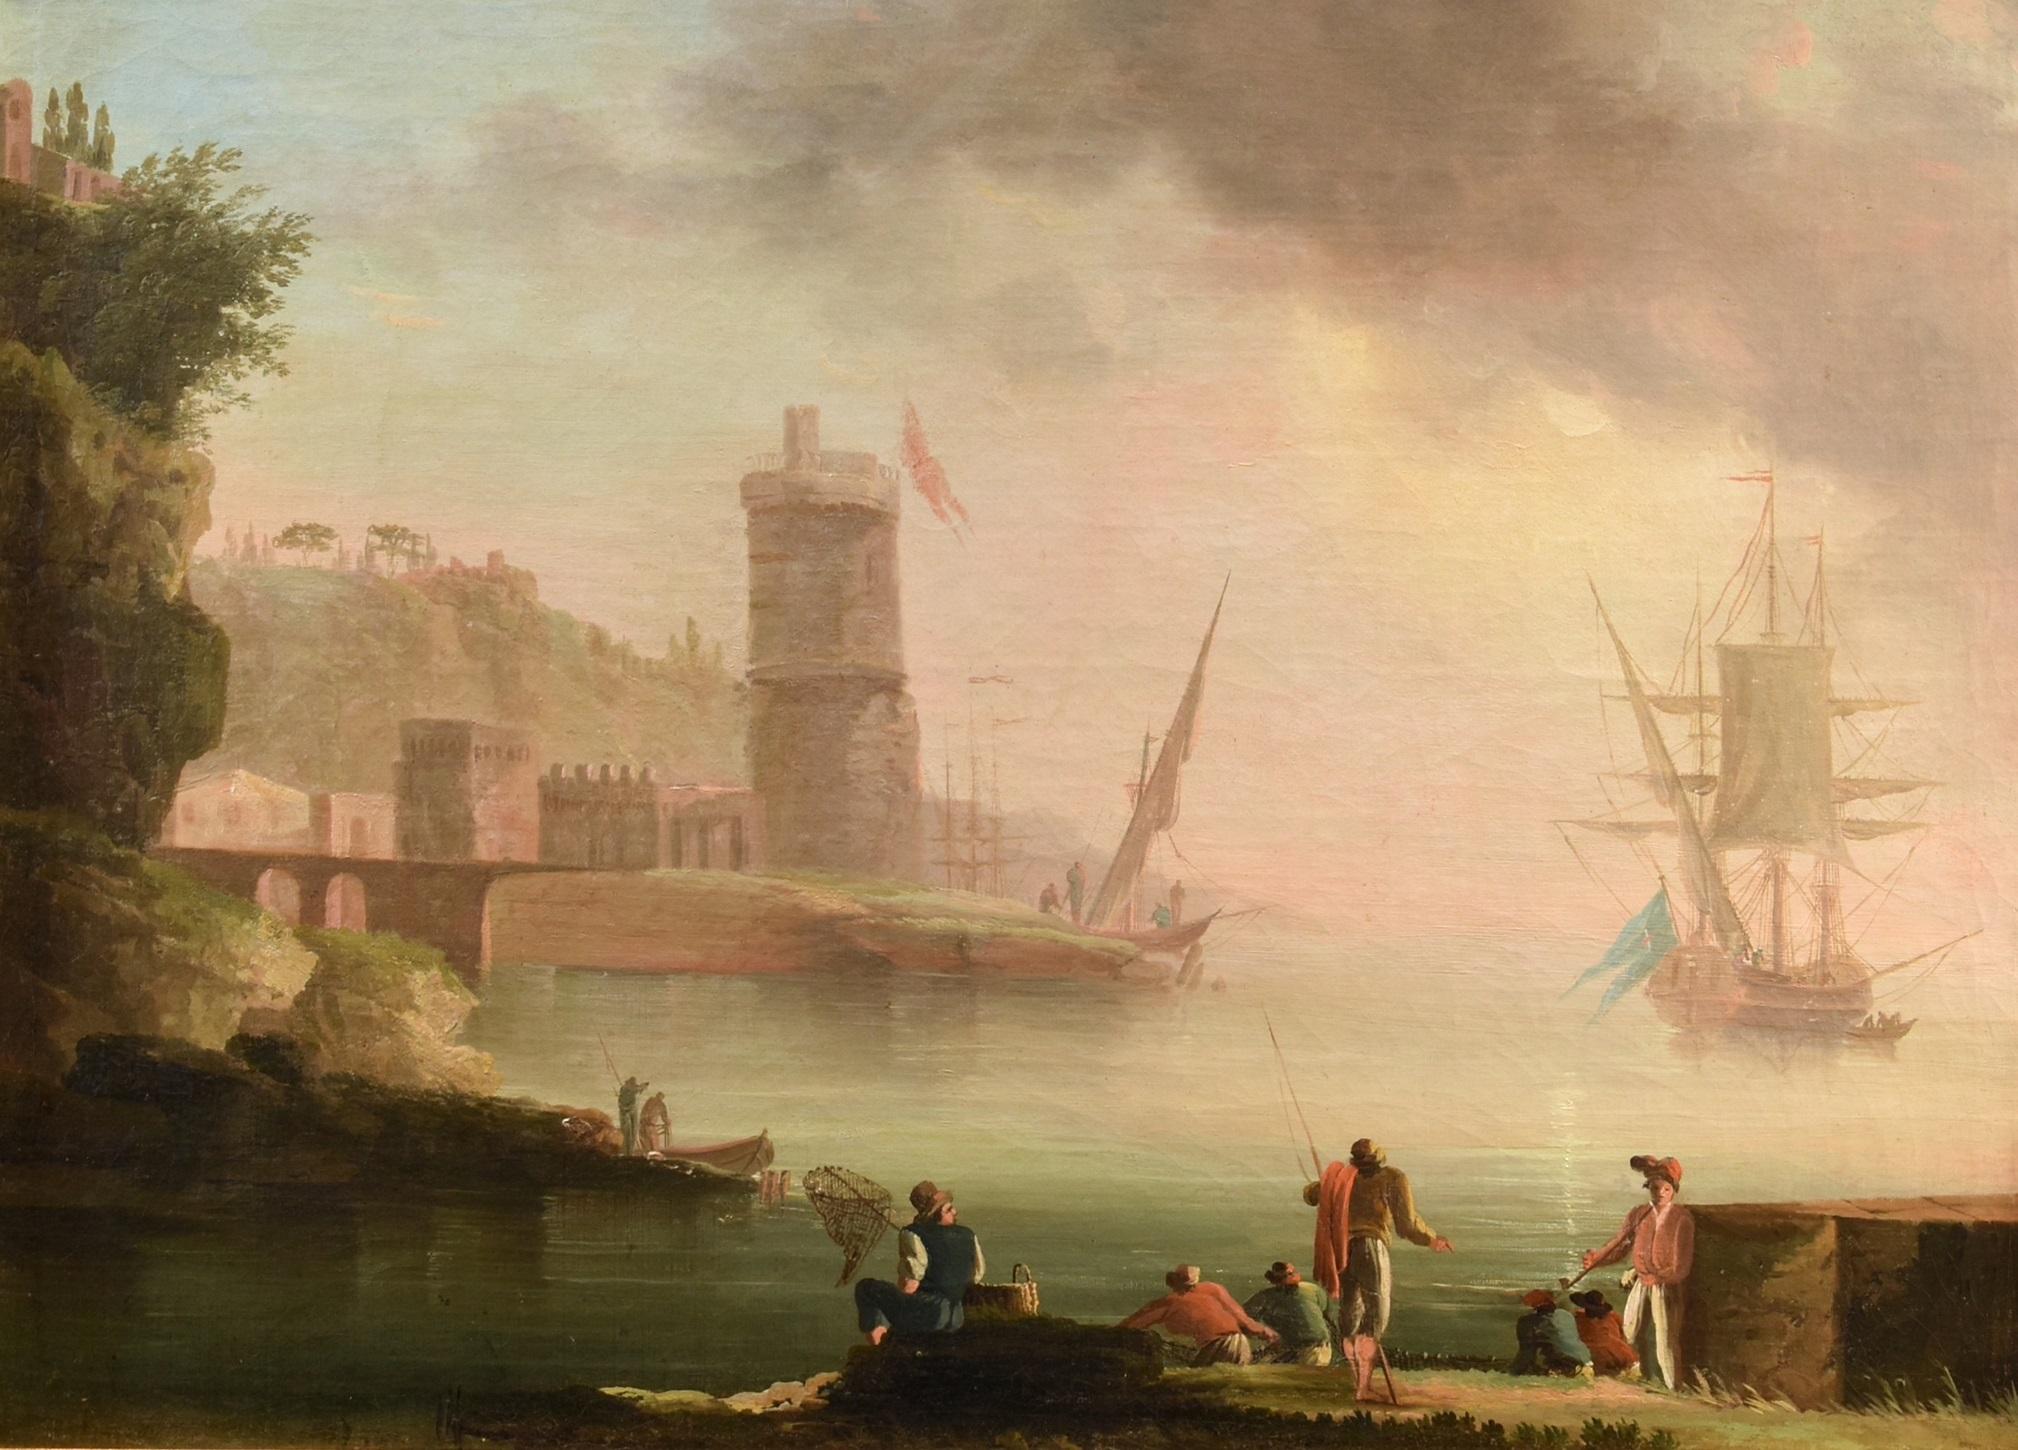 Coastal Landscape See Paint Lacroix de Marseille Oil on canvas 18th Century Art - Old Masters Painting by Charles François Grenier De Lacroix, called de Marseille (Marseille 1700 - Berlin 1782)